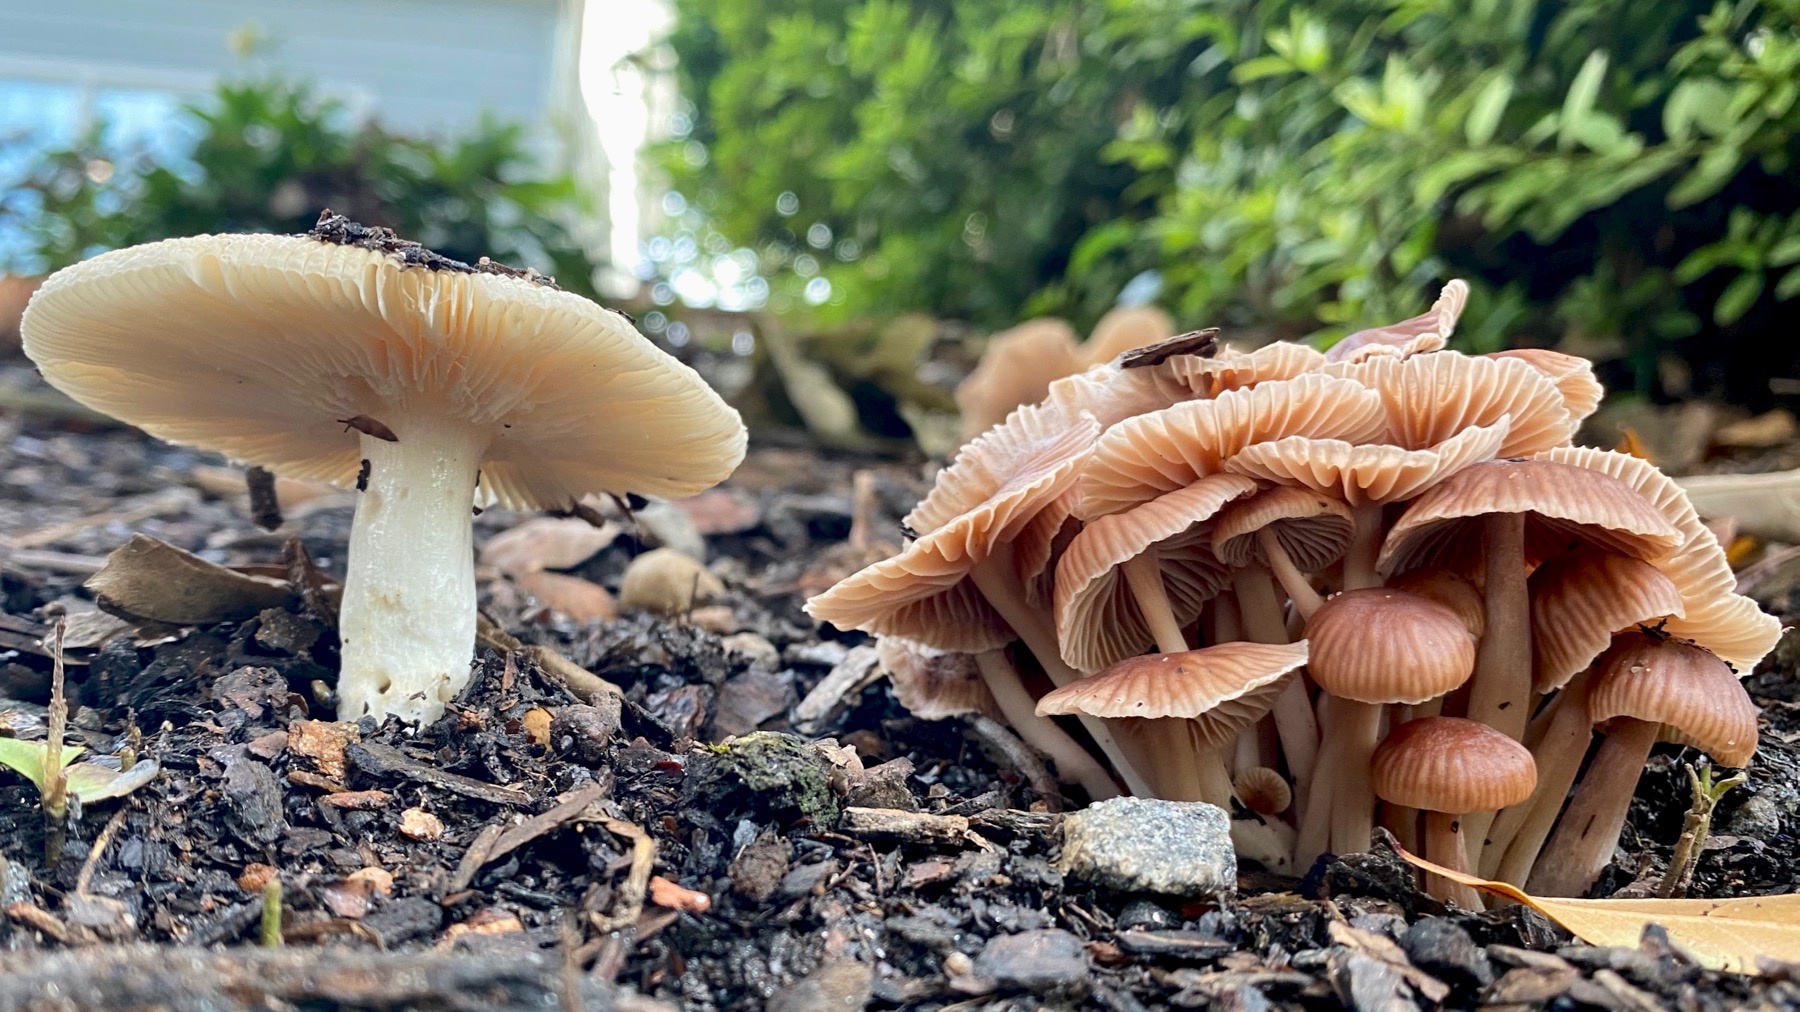 Mushroom duo